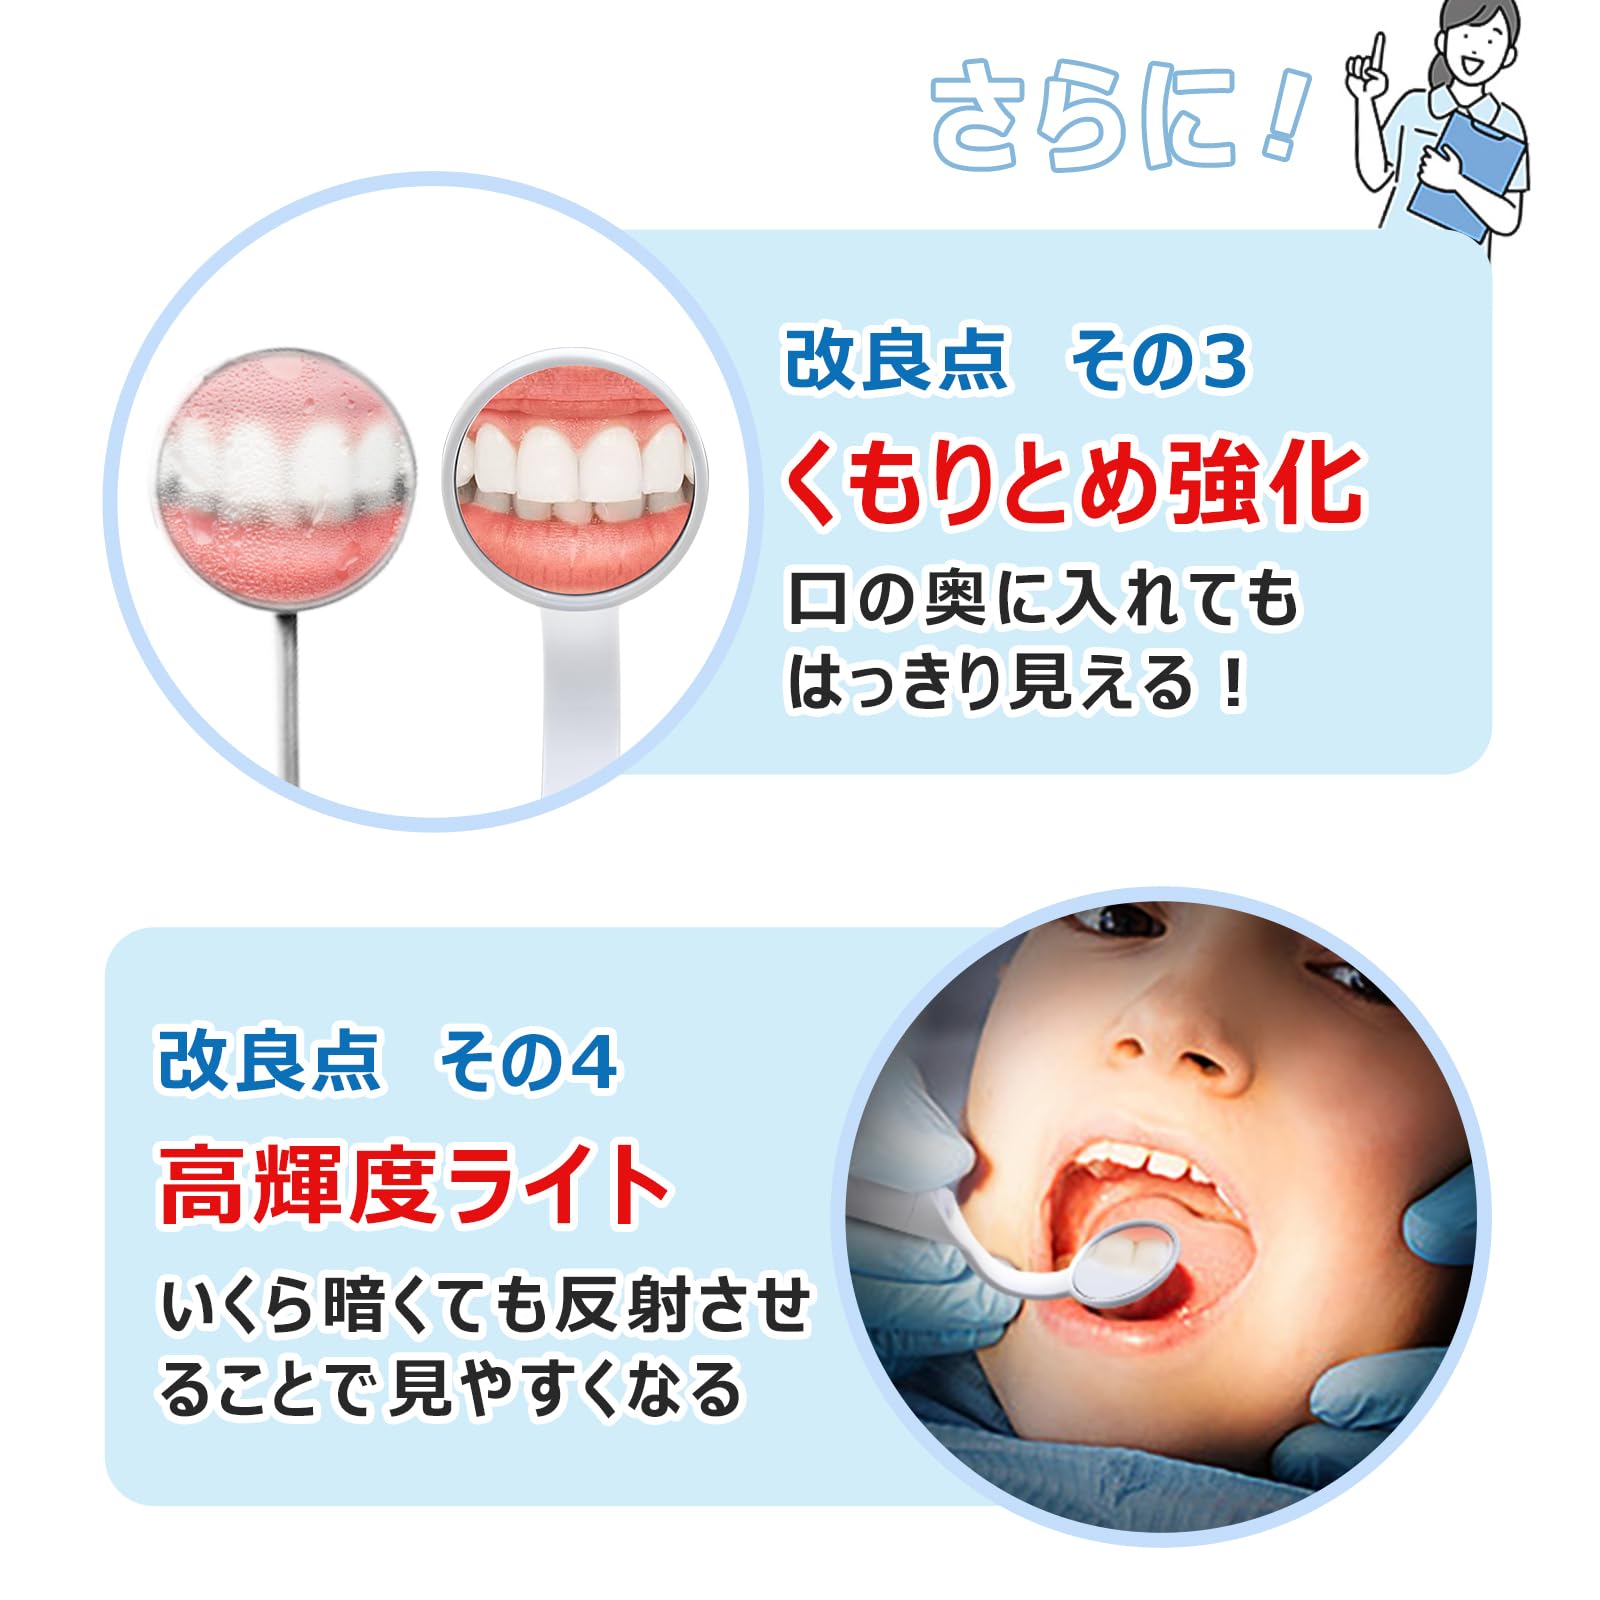  зубной зеркало зуб зеркало зуб . для зеркало LED с подсветкой замутненный . трудно проверка уход за зубами уход за полостью рта защита полости зуб. загрязнения проверка собственный уход зеркало полость рта mi